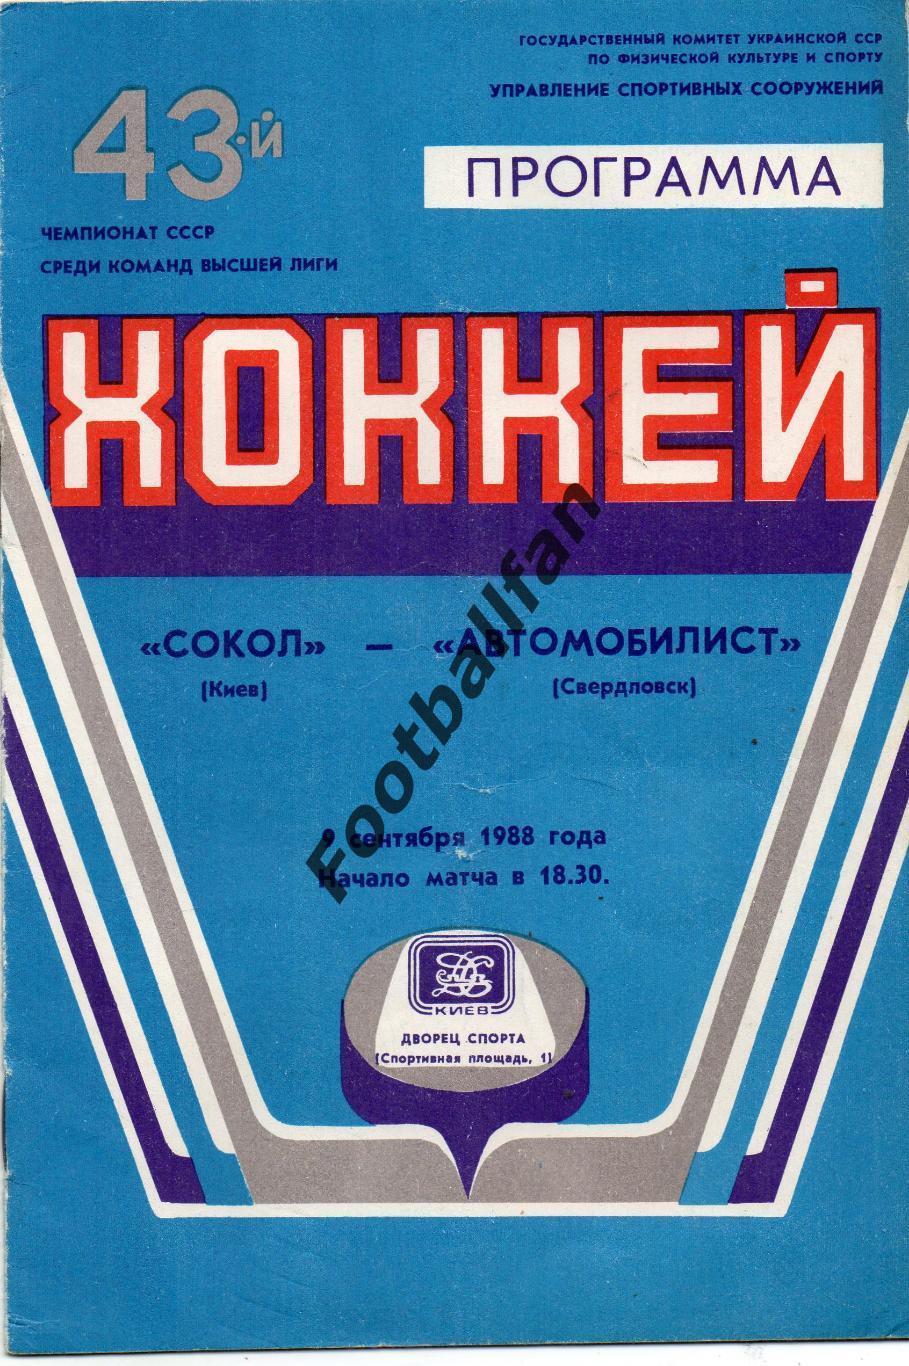 Сокол Киев - Автомобилист Свердловск 08.09.1988